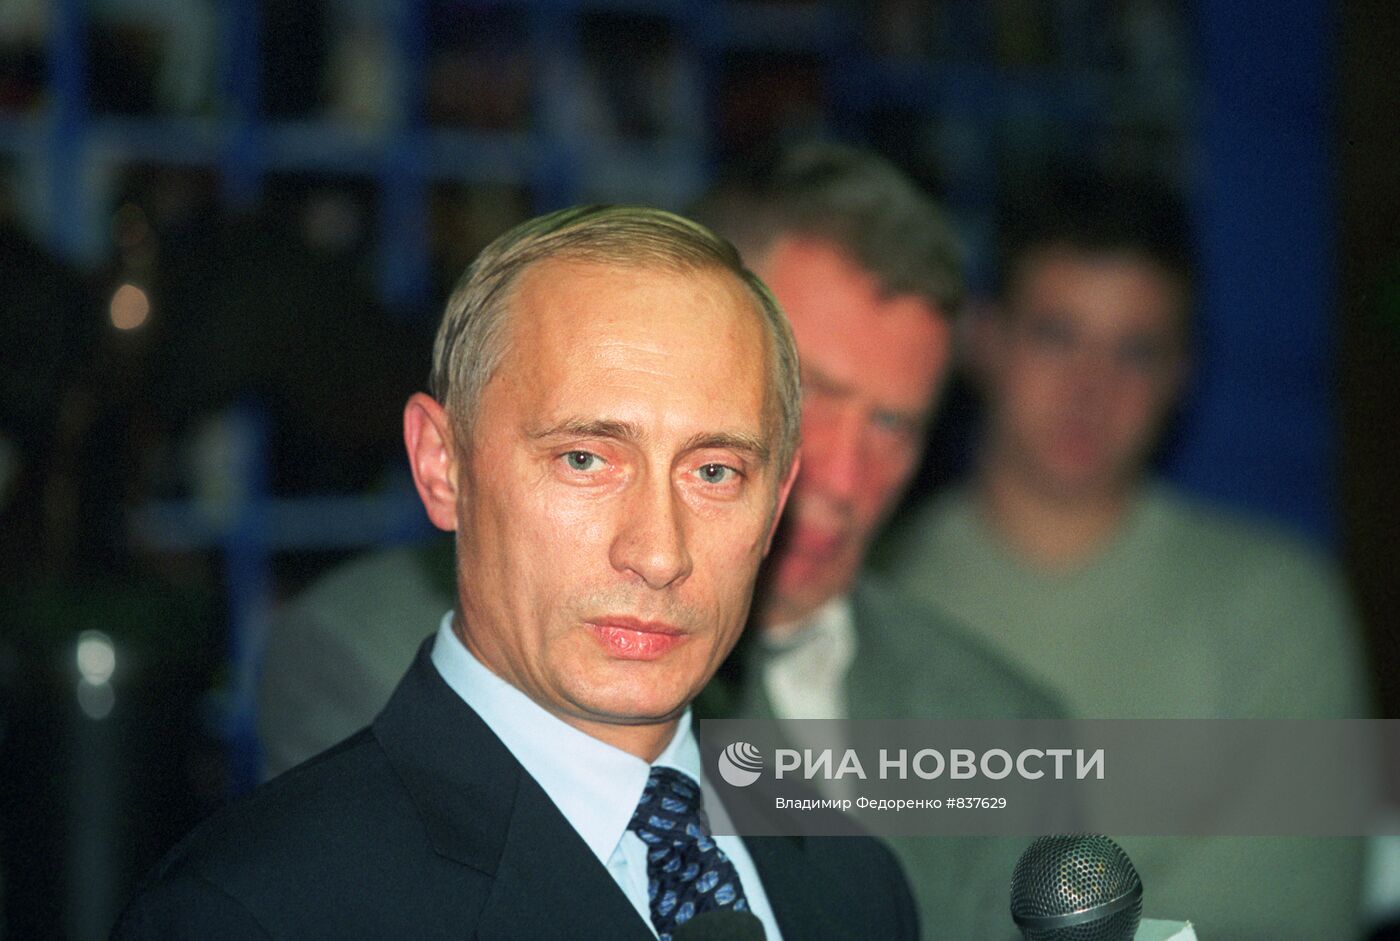 И.о. премьер-министра РФ Владимир Путин